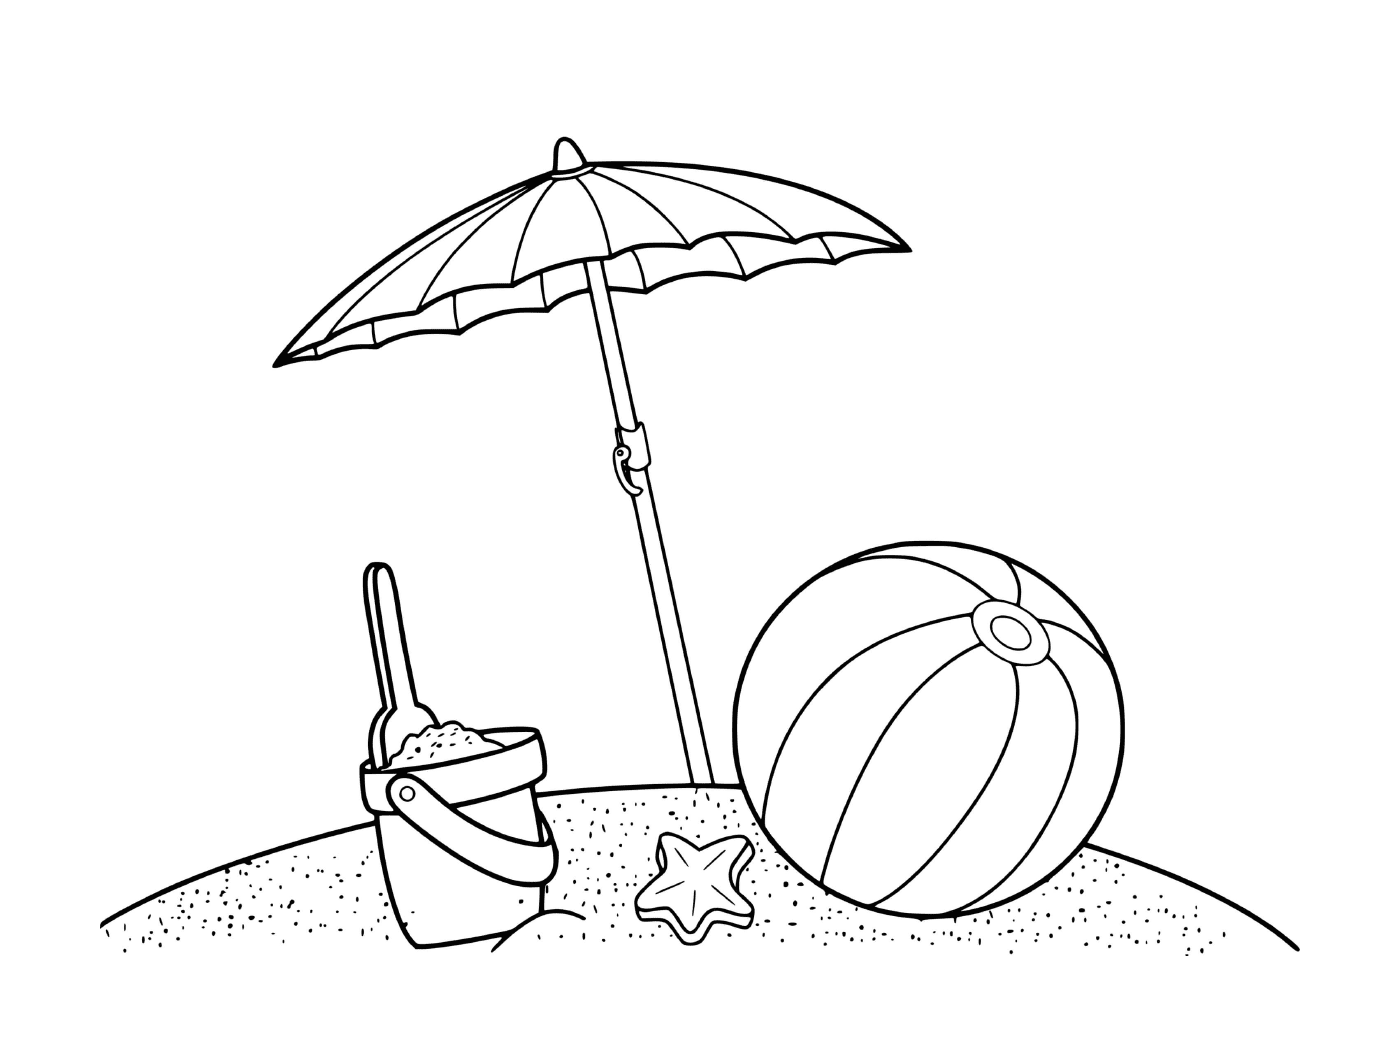   Des jeux de sable sur la plage 